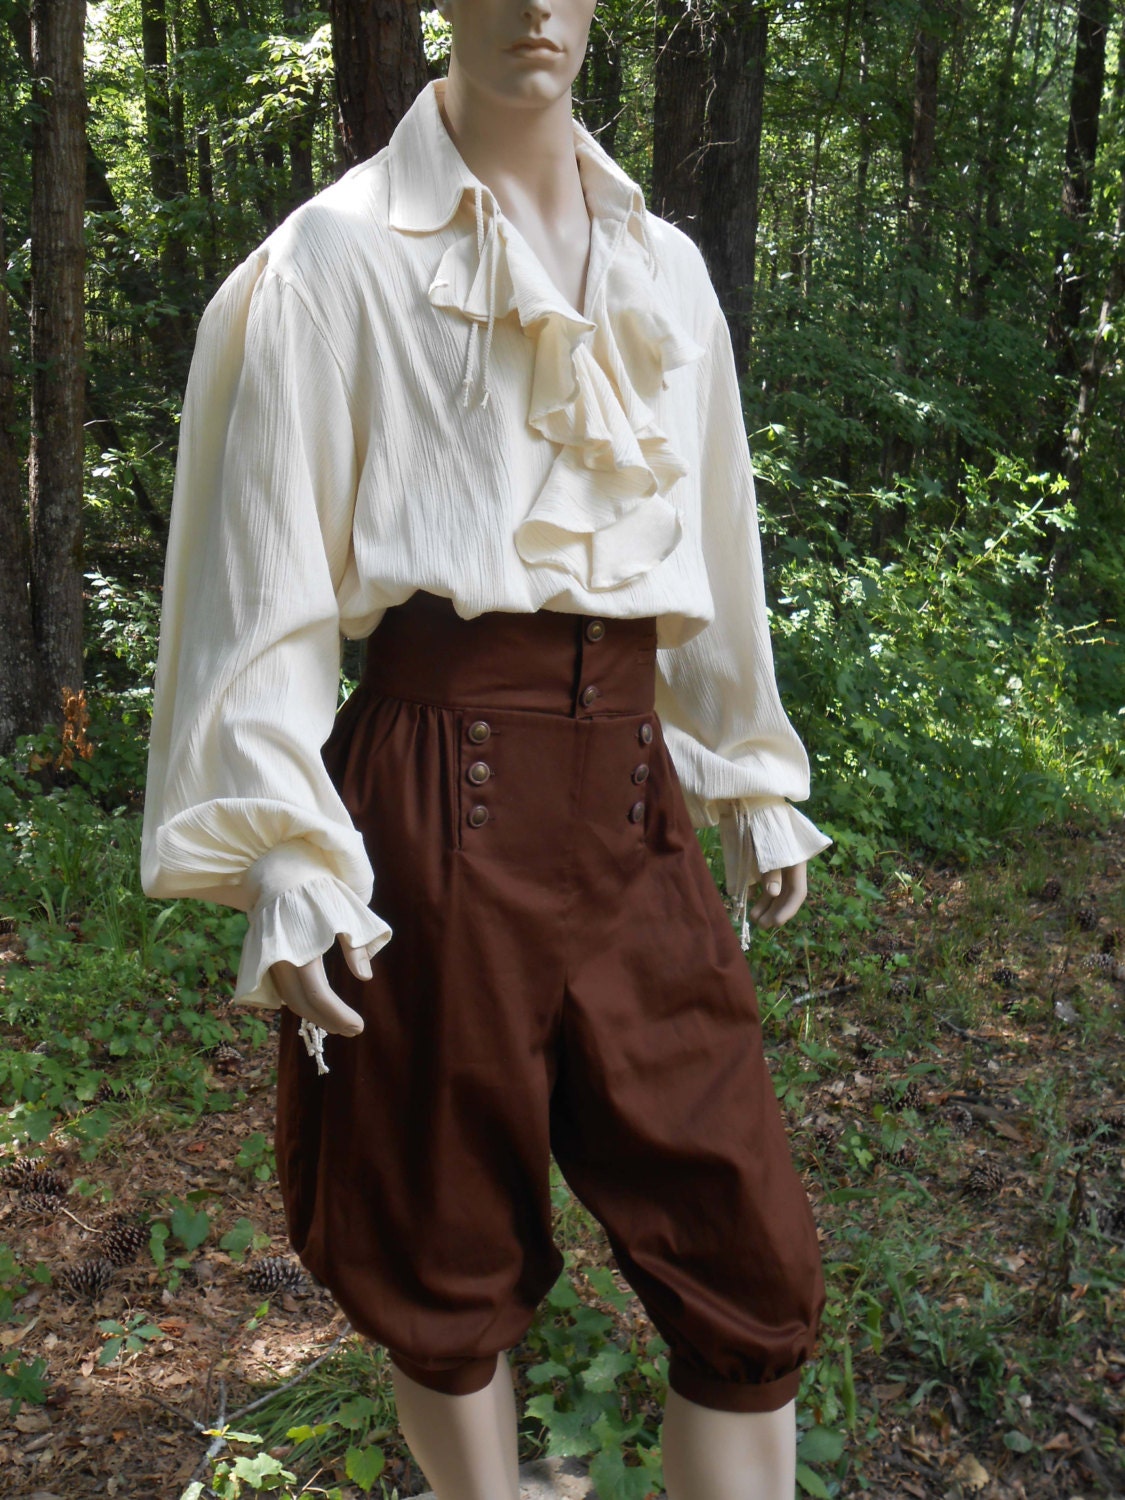 B020-08D Poet Shirt Musketeer Shirt Renaissance Pirate Shirt Flounce Ruffled  Front Men's Women's Made to Order 